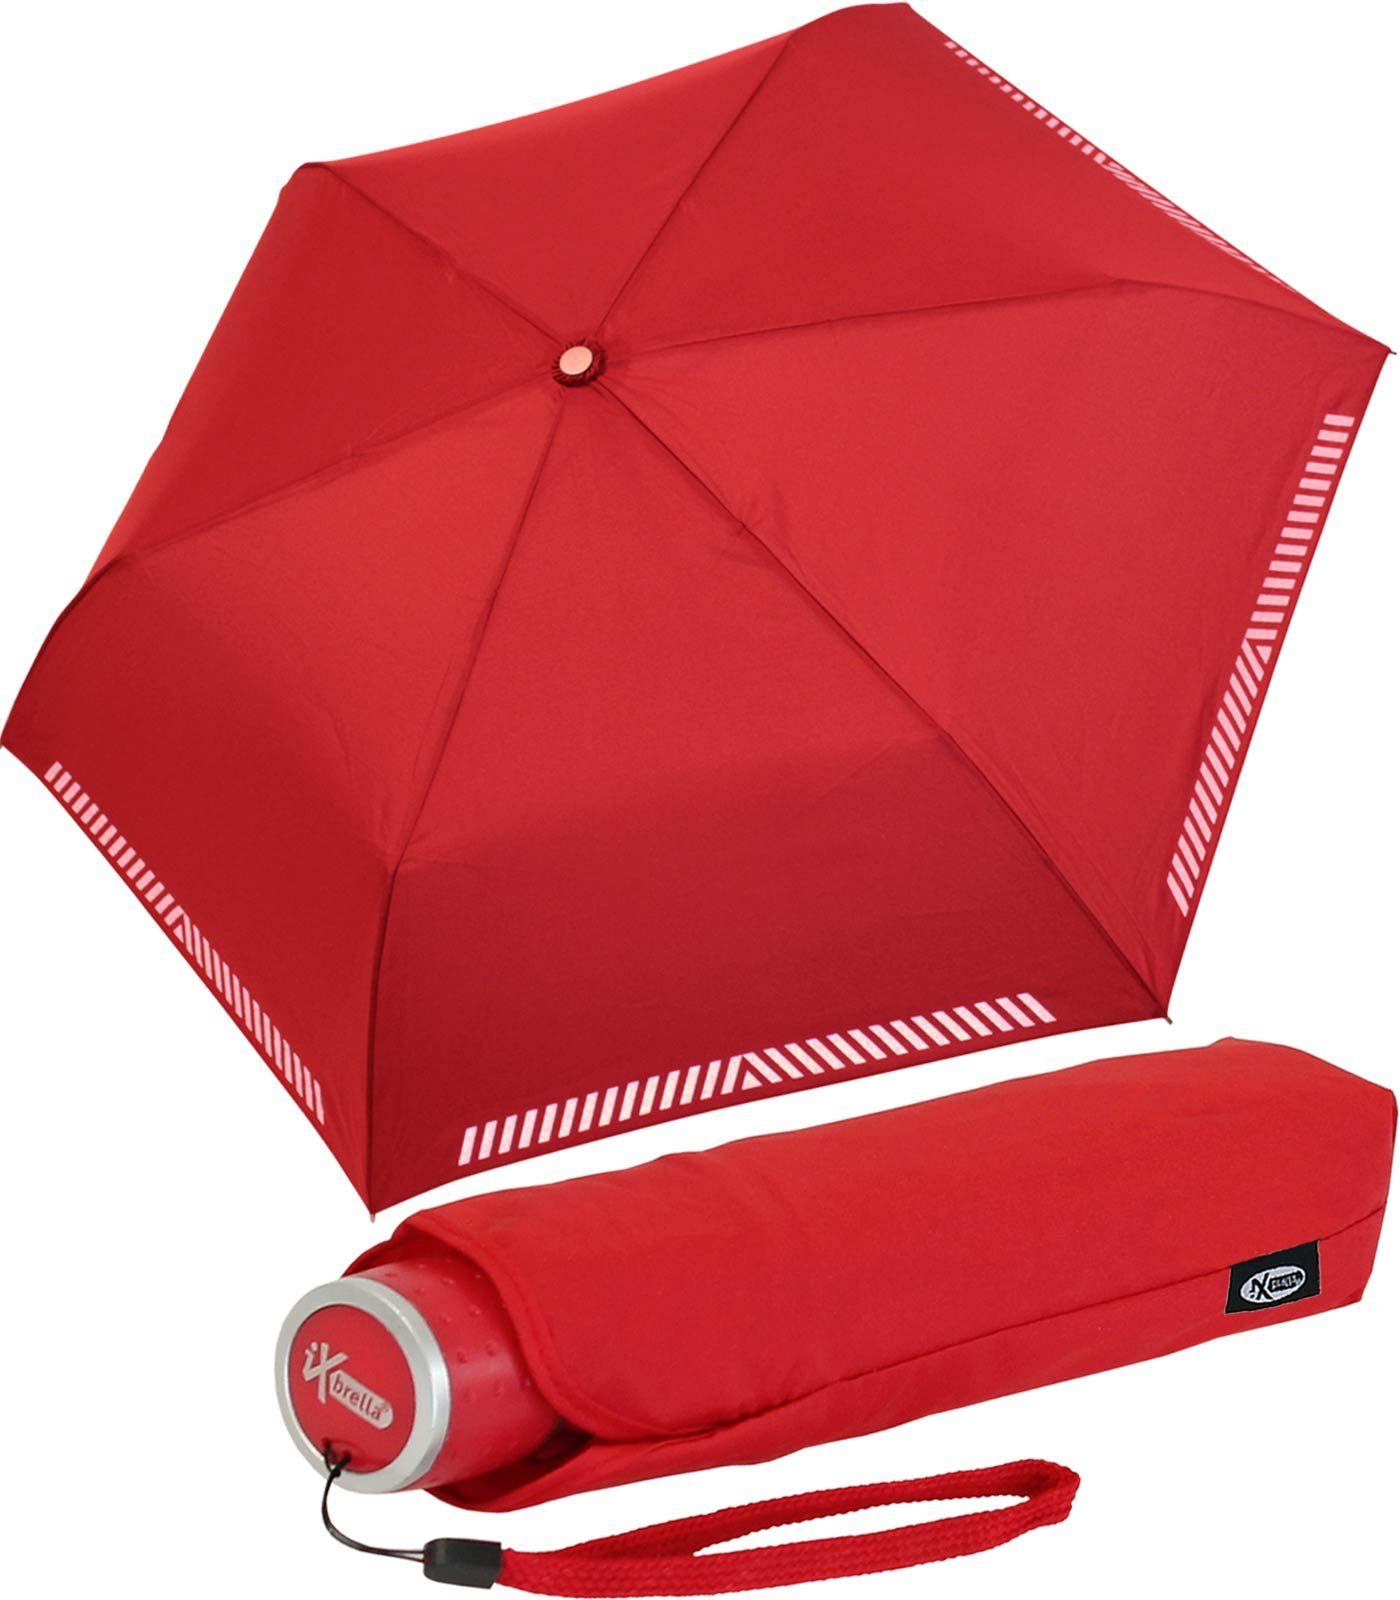 iX-brella Taschenregenschirm Mini Kinderschirm Safety Reflex extra leicht, reflektierend rot | Taschenschirme